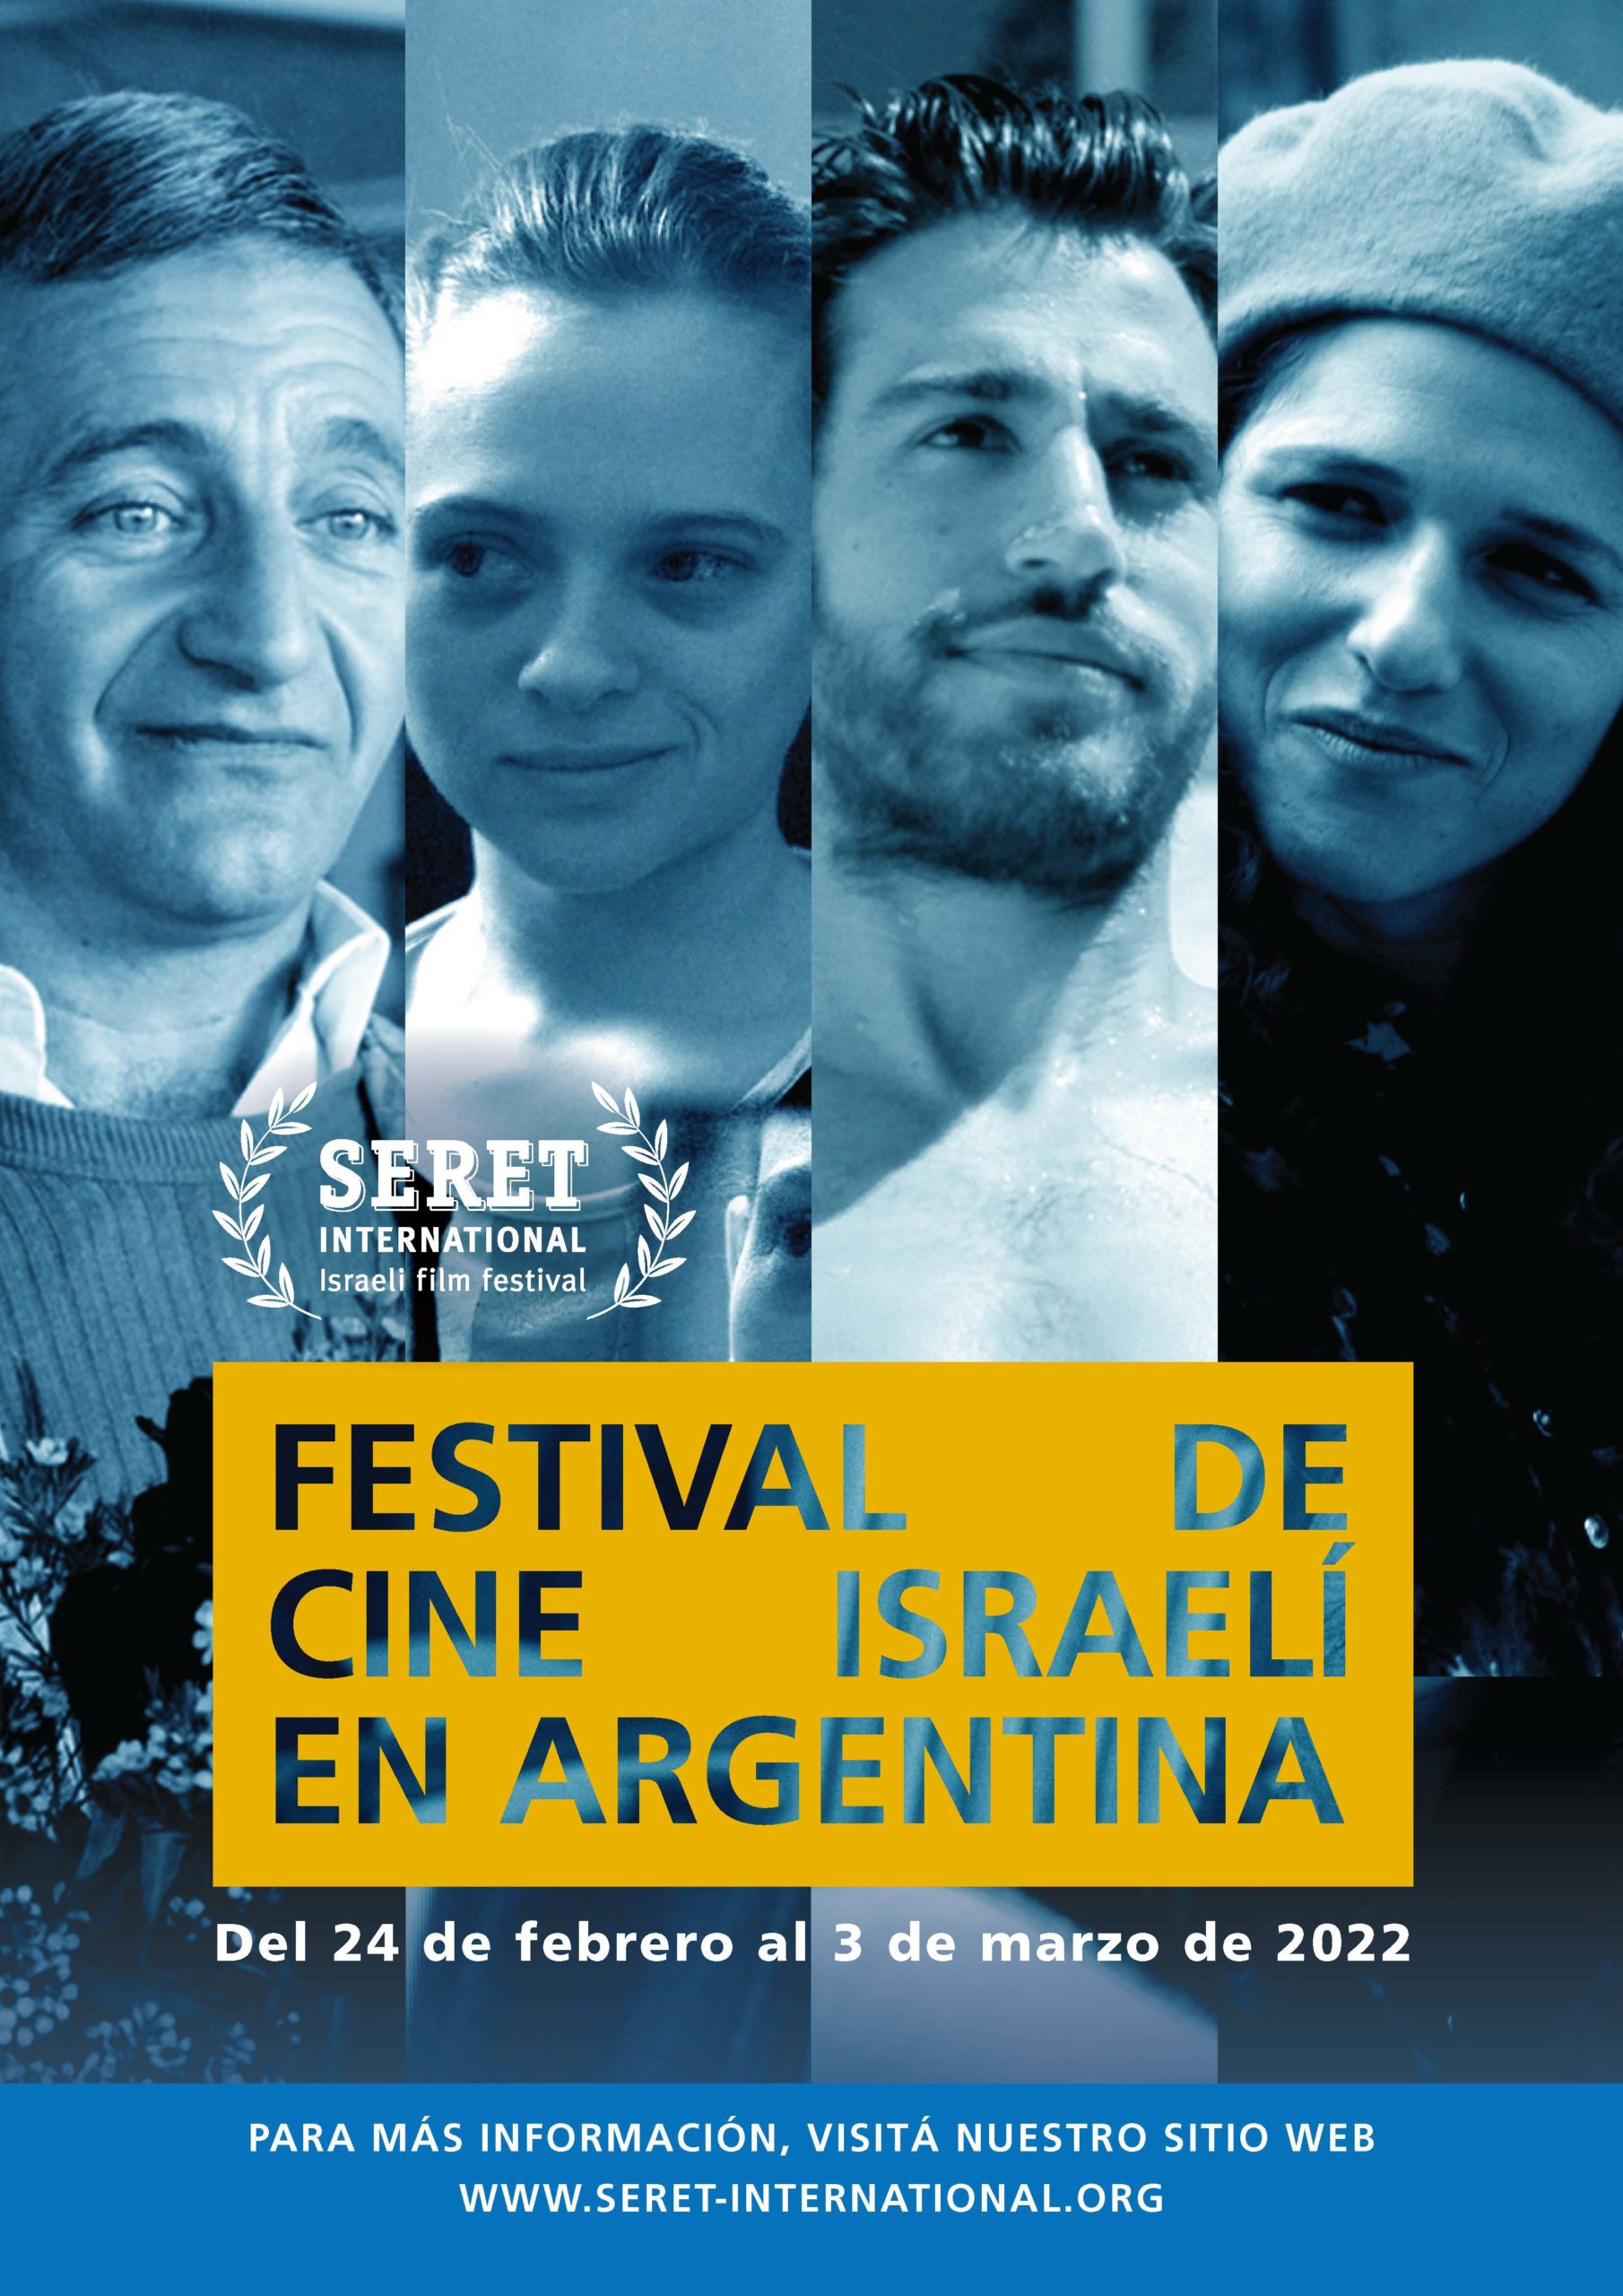 Llega por primera vez a Argentina el Festival Internacional de Cine Israelí